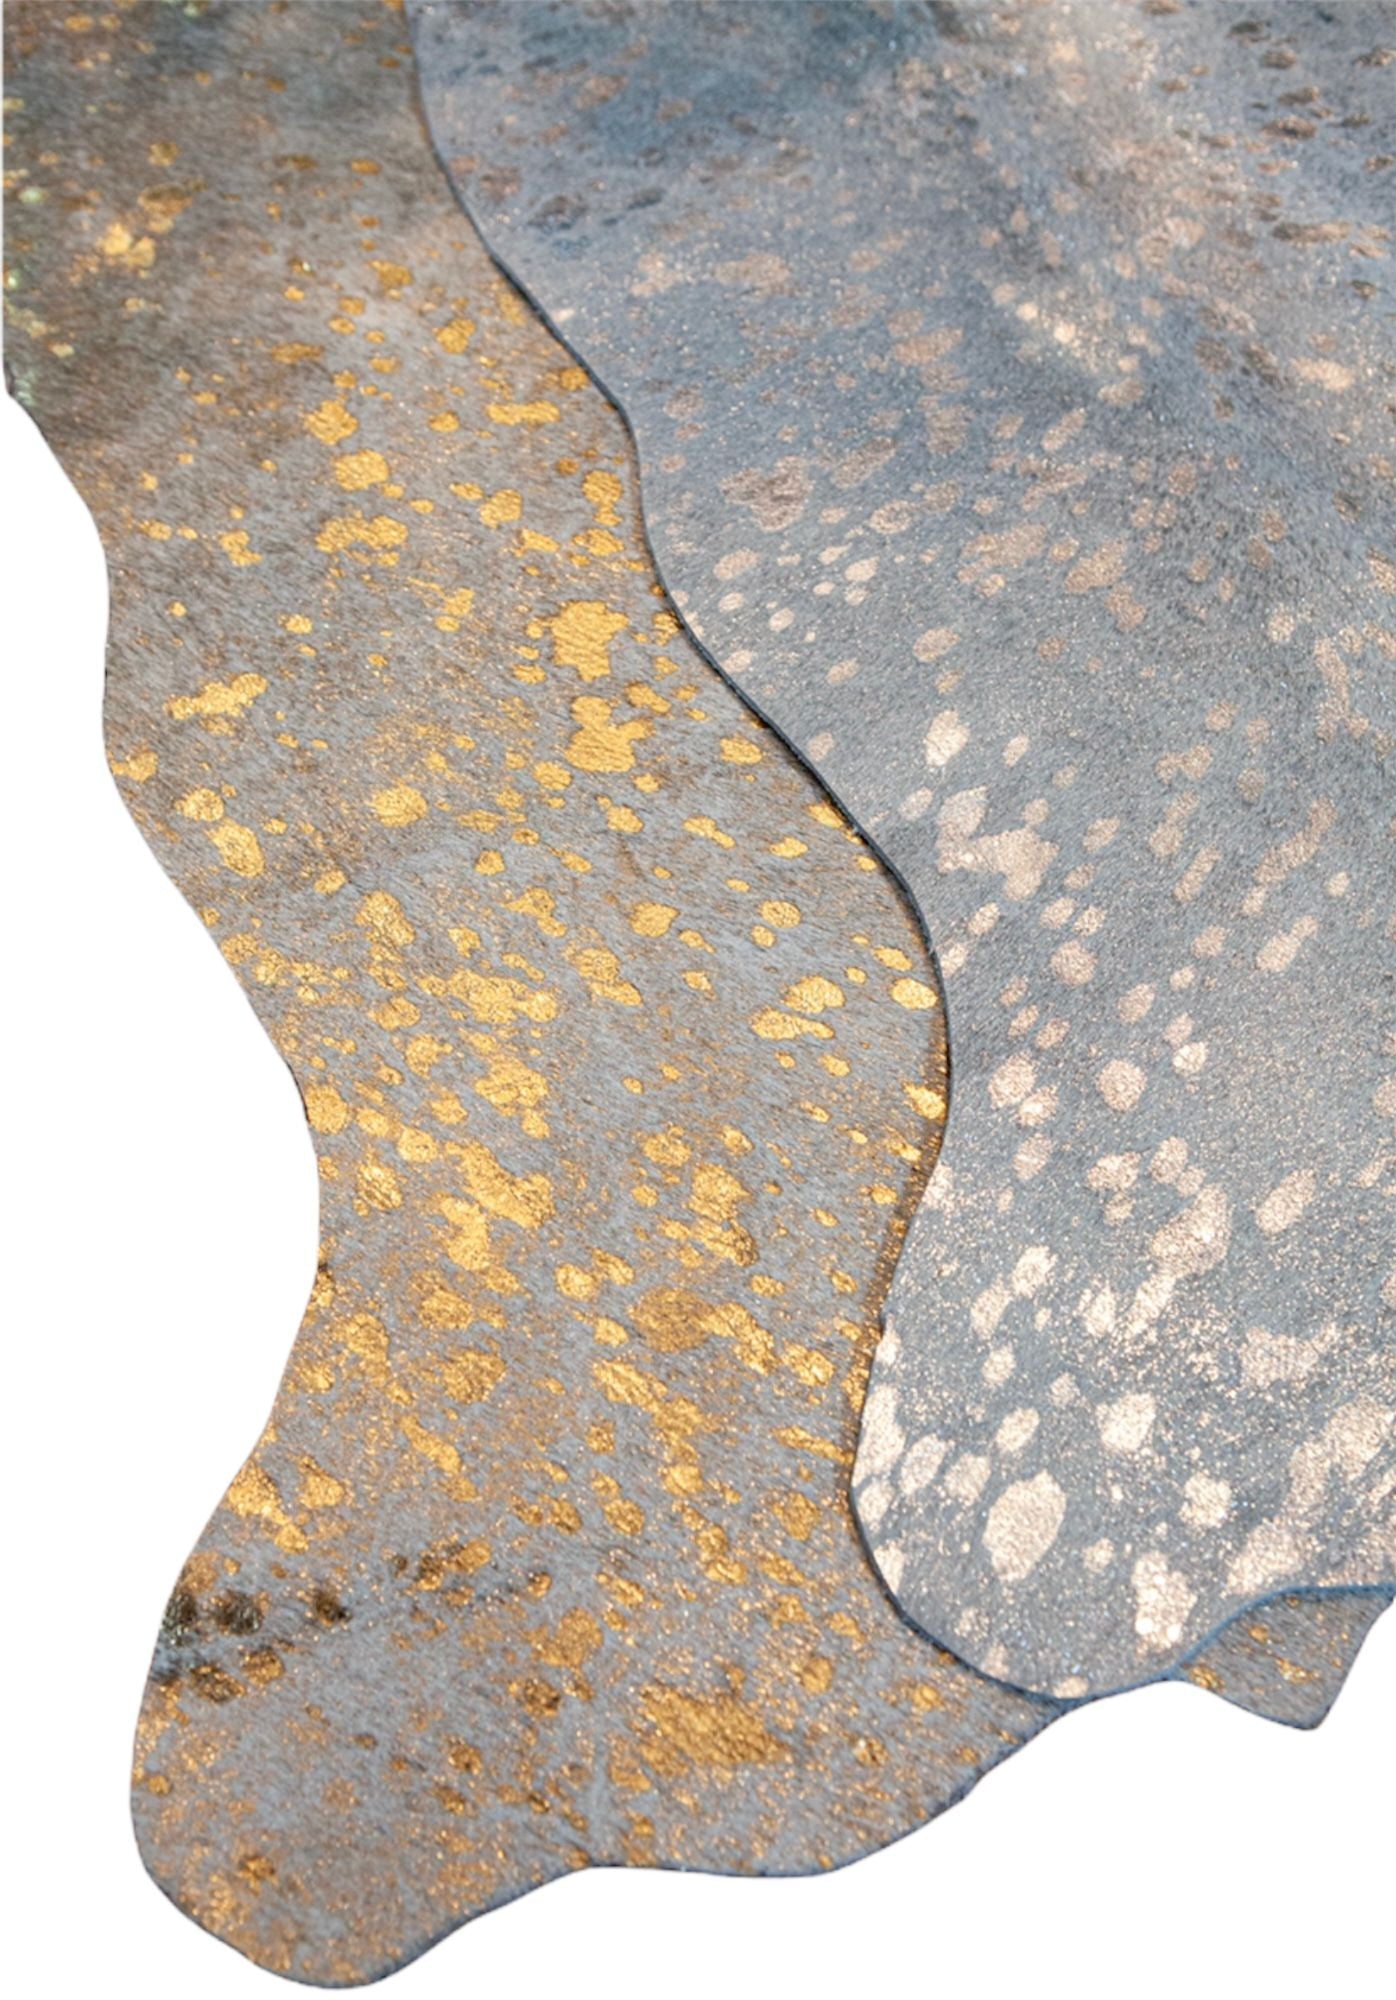 unendlich schoen - Echter Kuhfell Teppich klein, Made in Germany, geruchsneutral, Rinderfell ideal für Wohnzimmer Esszimmer Flur (Gold Sparkel metallic, 160 x 70 cm)